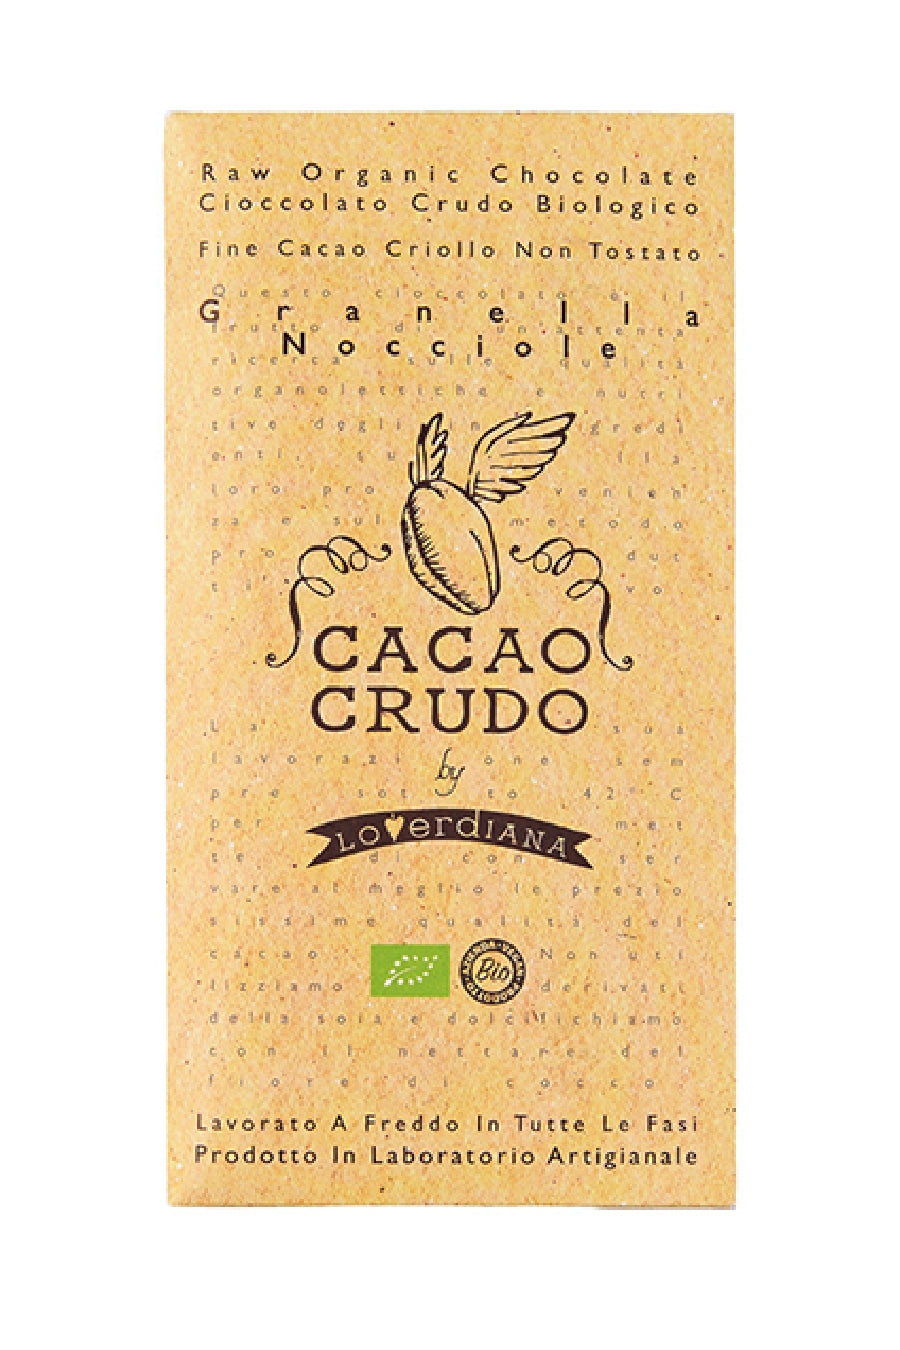 有機ローチョコレート / Dark Organic Chocolate［CACAO CRUDO］